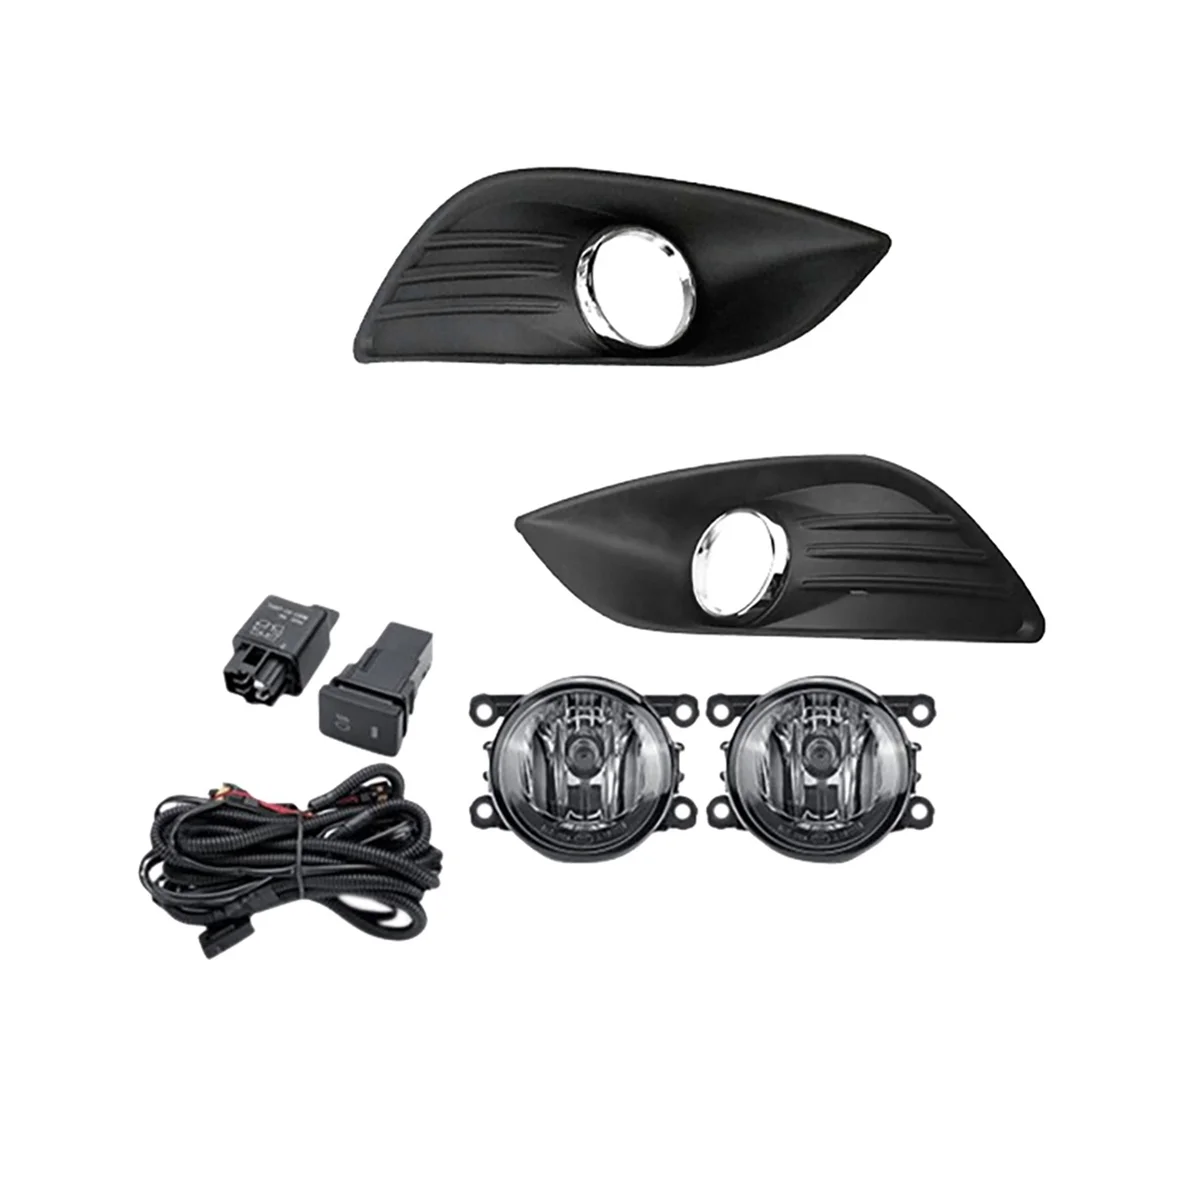 

Halogen Fog Light Headlight Fog Lamp Cover Grille Bezel Harness Switch Kit for Ford Focus MK2 2009-2011